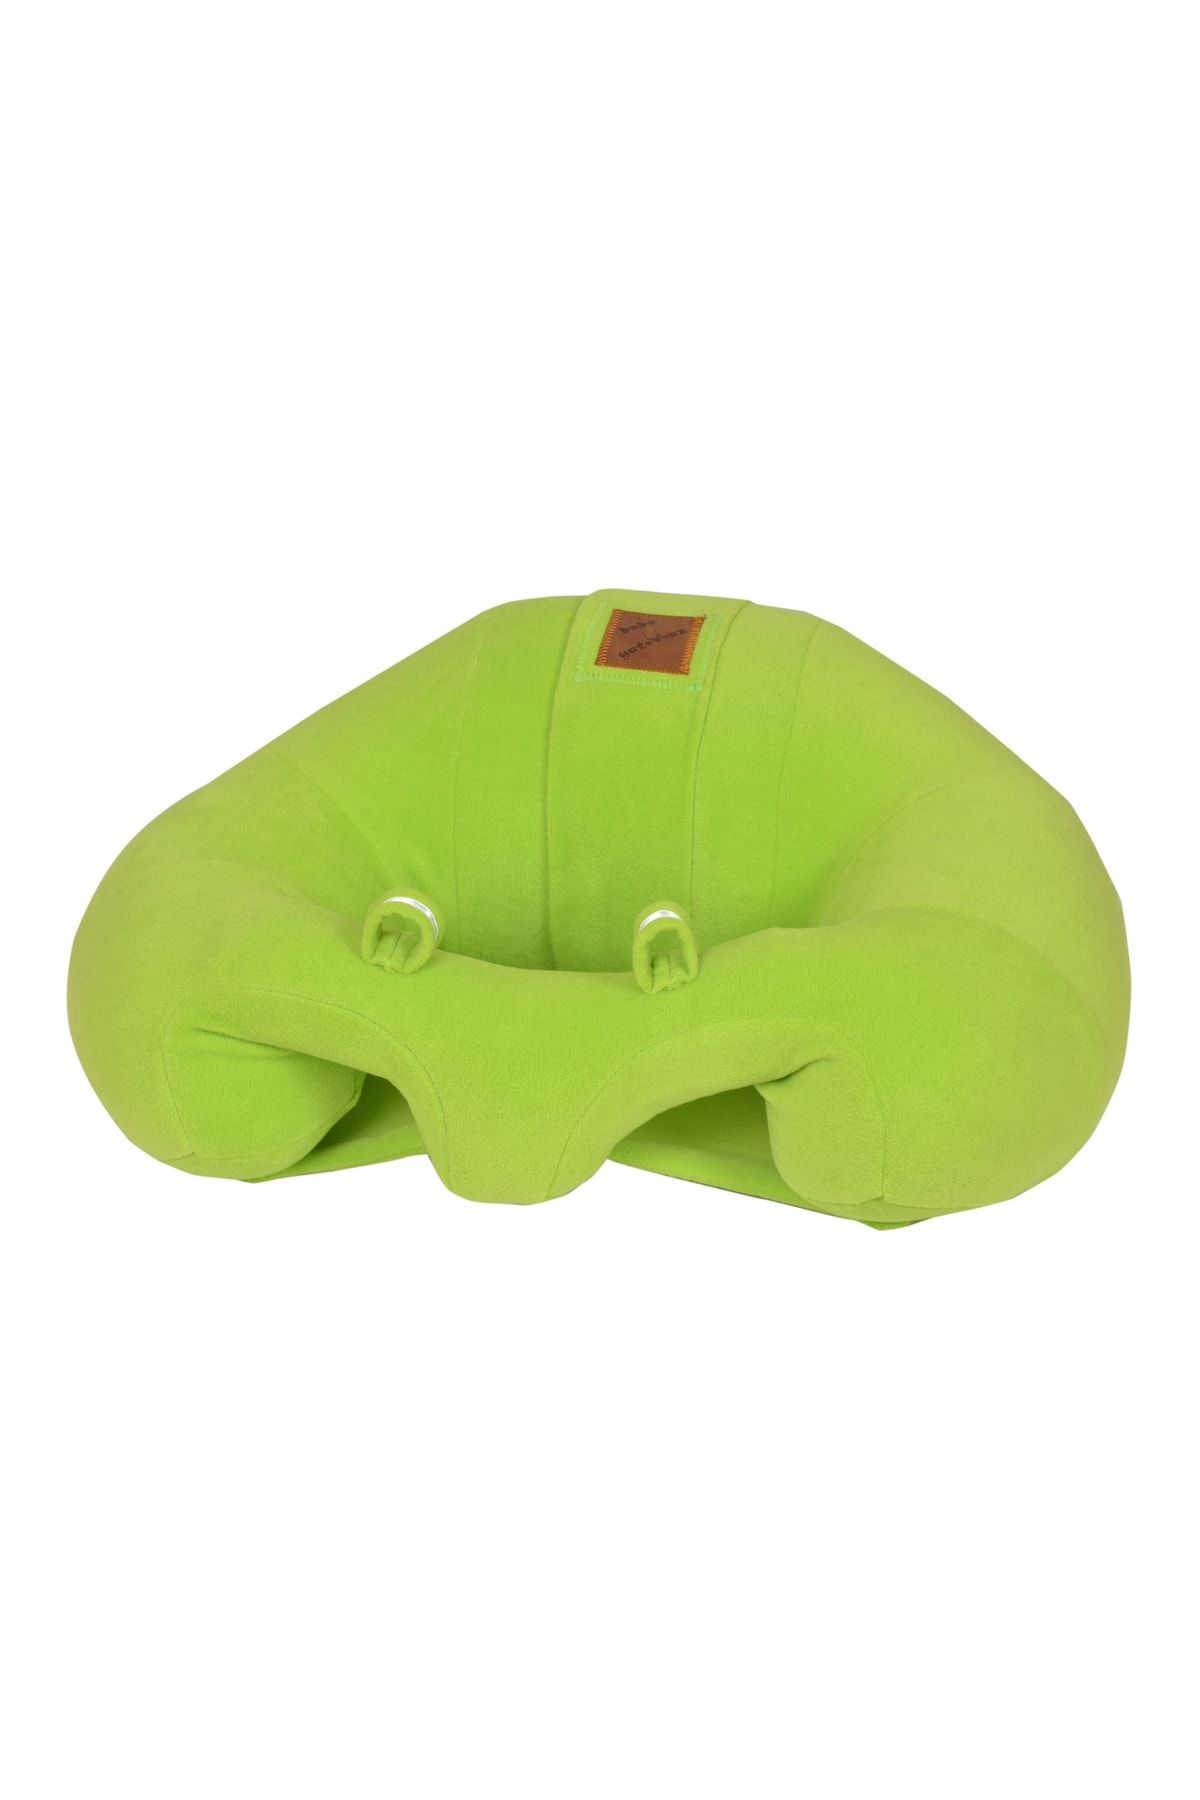 Bebeyatmaz Bebe Yatmaz Bebek Oturma Destek Minderi Bebek Koltuğu Yeşil